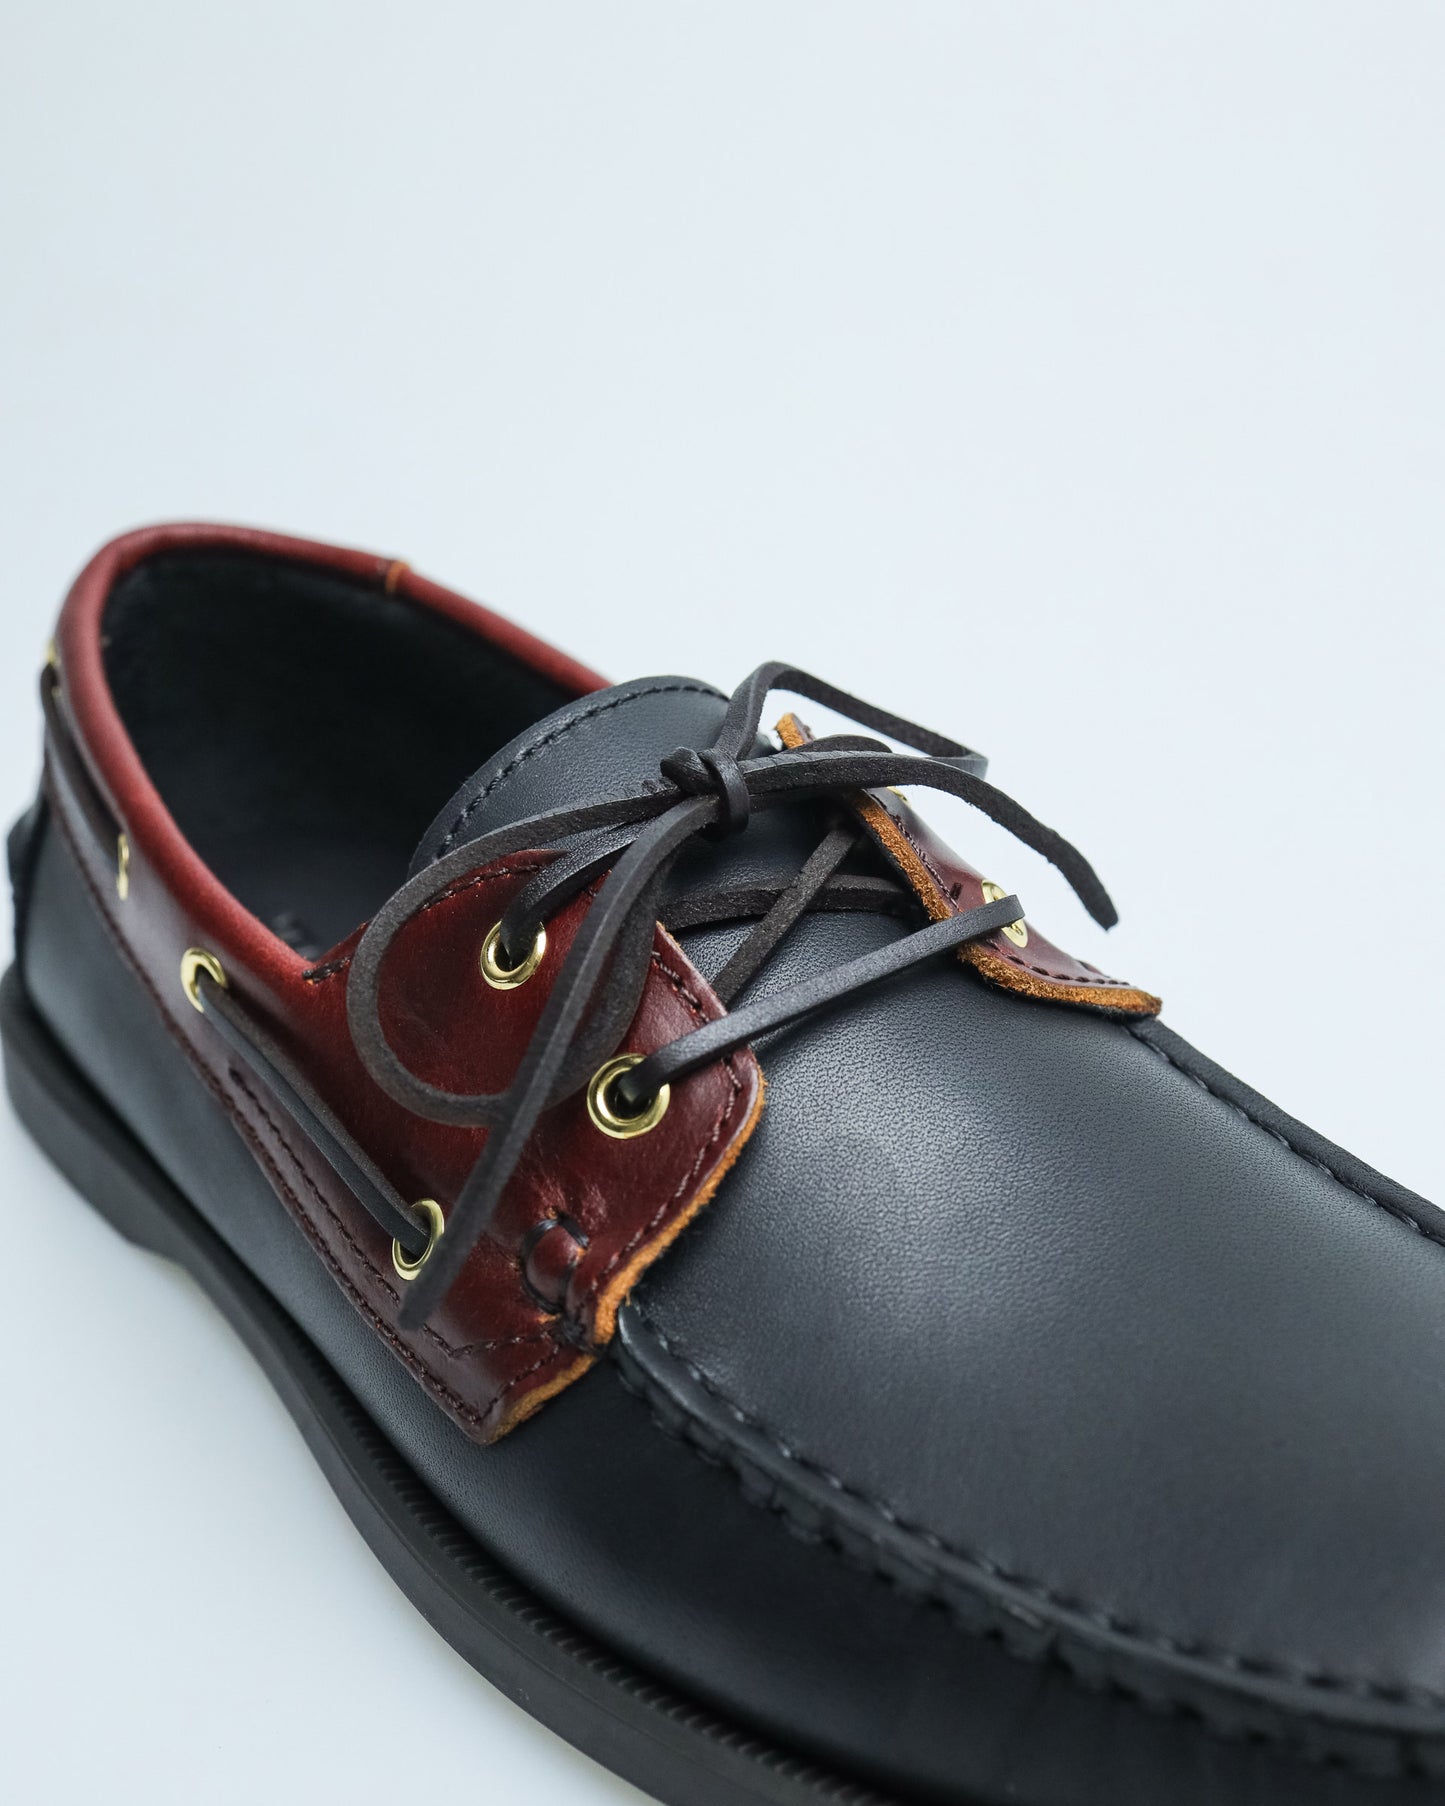 Tomaz C328A Men's Leather Boat Shoes (Black)